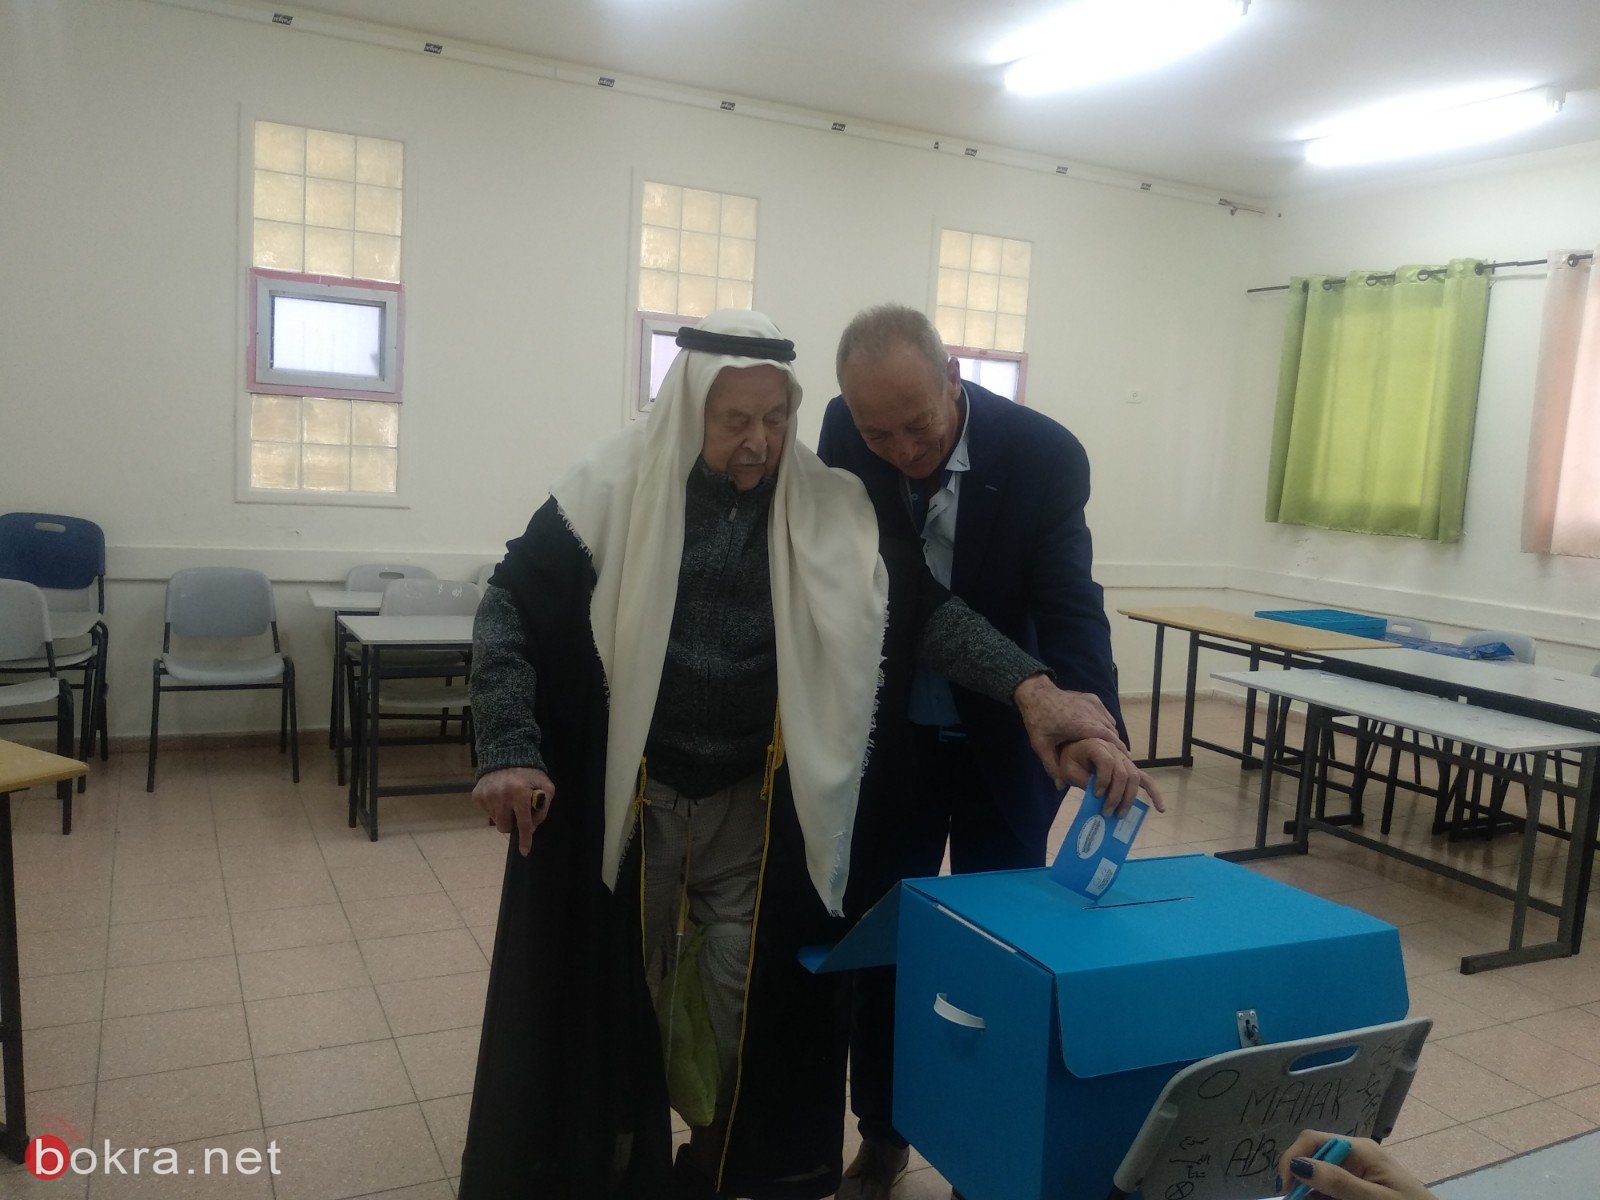 الحاج أحمد أبو عيّاش (102 عامًا) من عيلوط، يدلي بصوته ويدعو بالتصويت للمشتركة-0